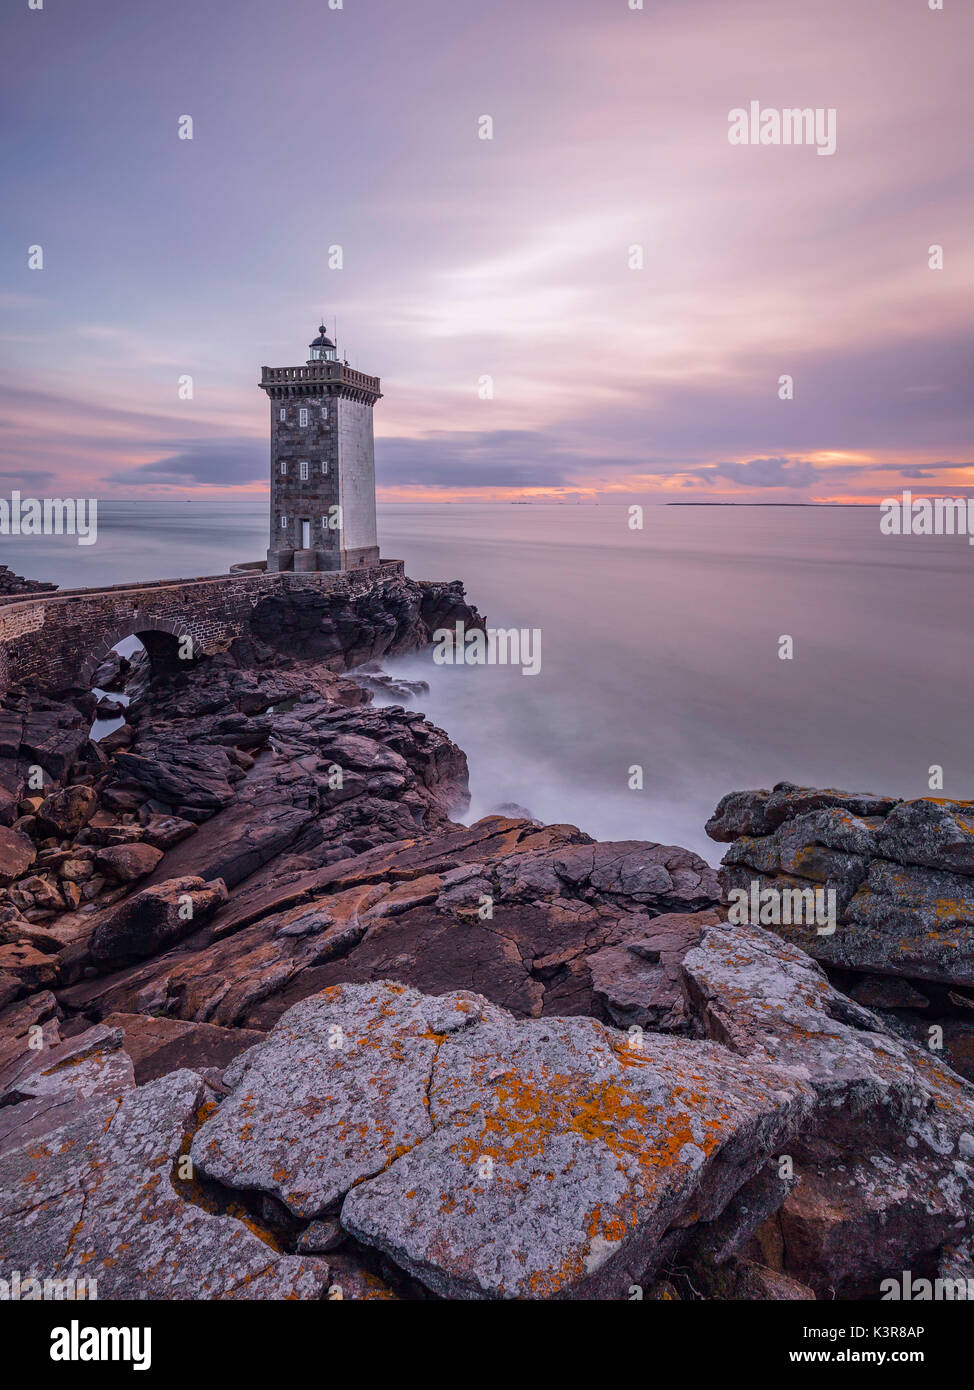 Le phare de Kermorvan, Le Conquet, Brest, Finistère, Bretagne - Bretagne, France, Europe Banque D'Images